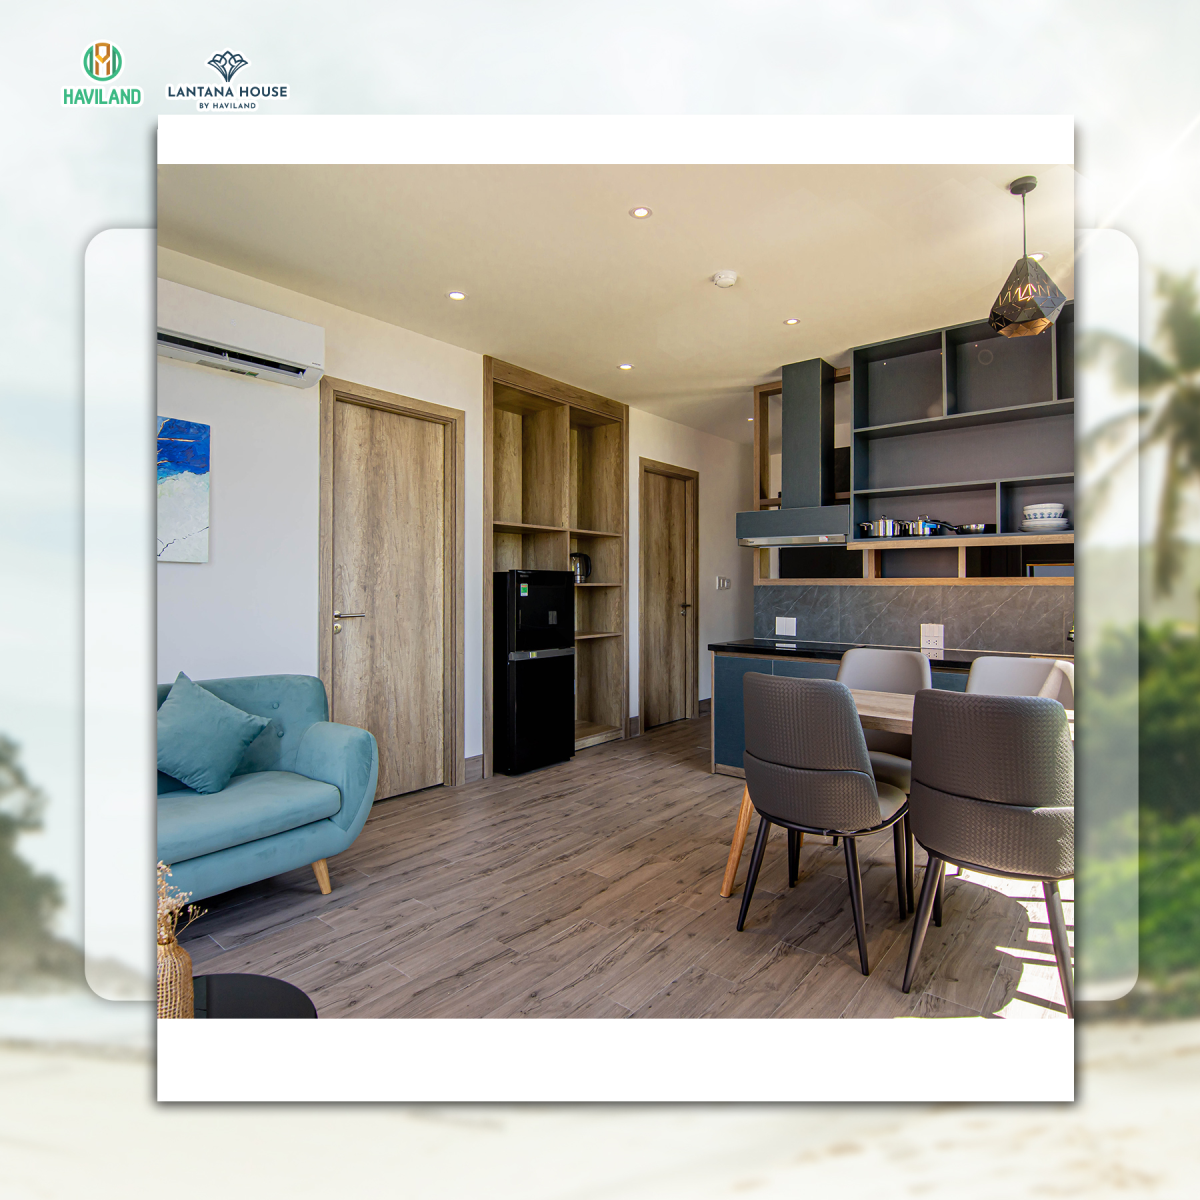  Lantana House Boutique là một không gian nghỉ dưỡng xanh mát đầy đủ tiện nghi với lối thiết kế hiện đại, gần gũi với thiên nhiên